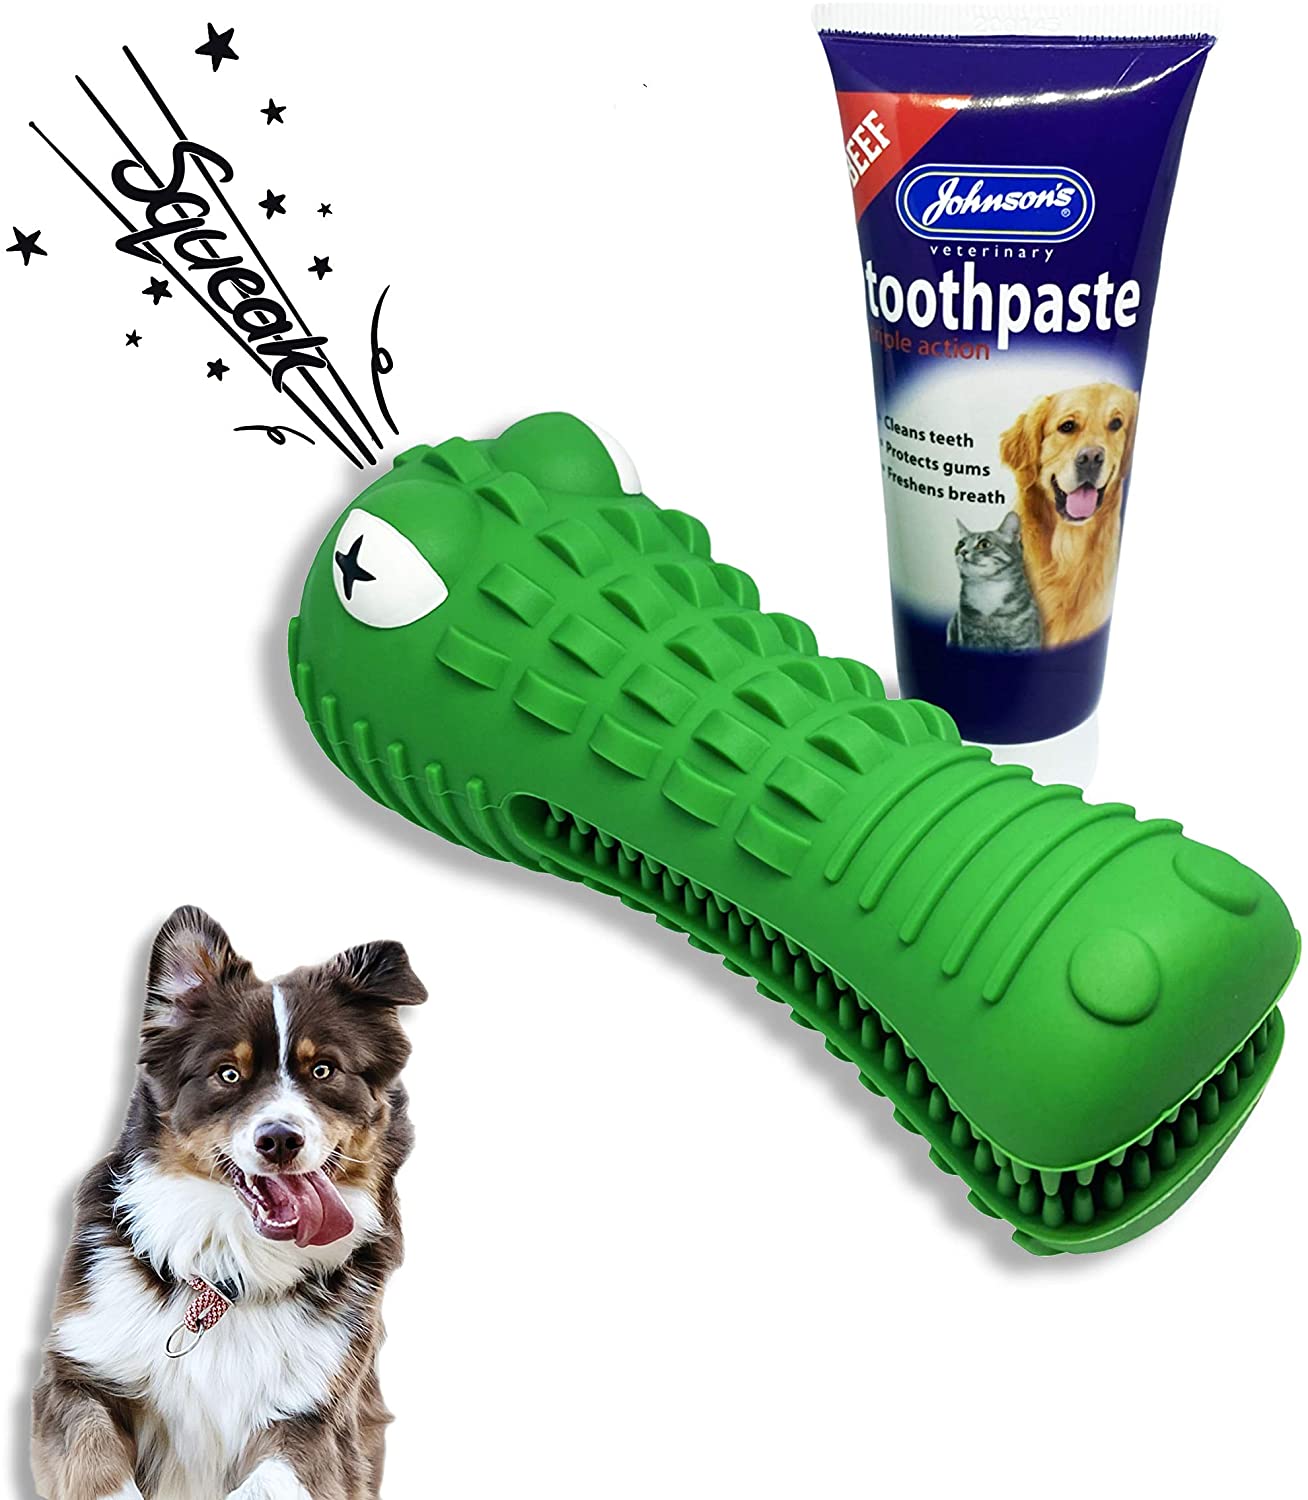 ROYALUX Ulti-Mutt - Pasta de dente para cães e brinquedo para mastigar